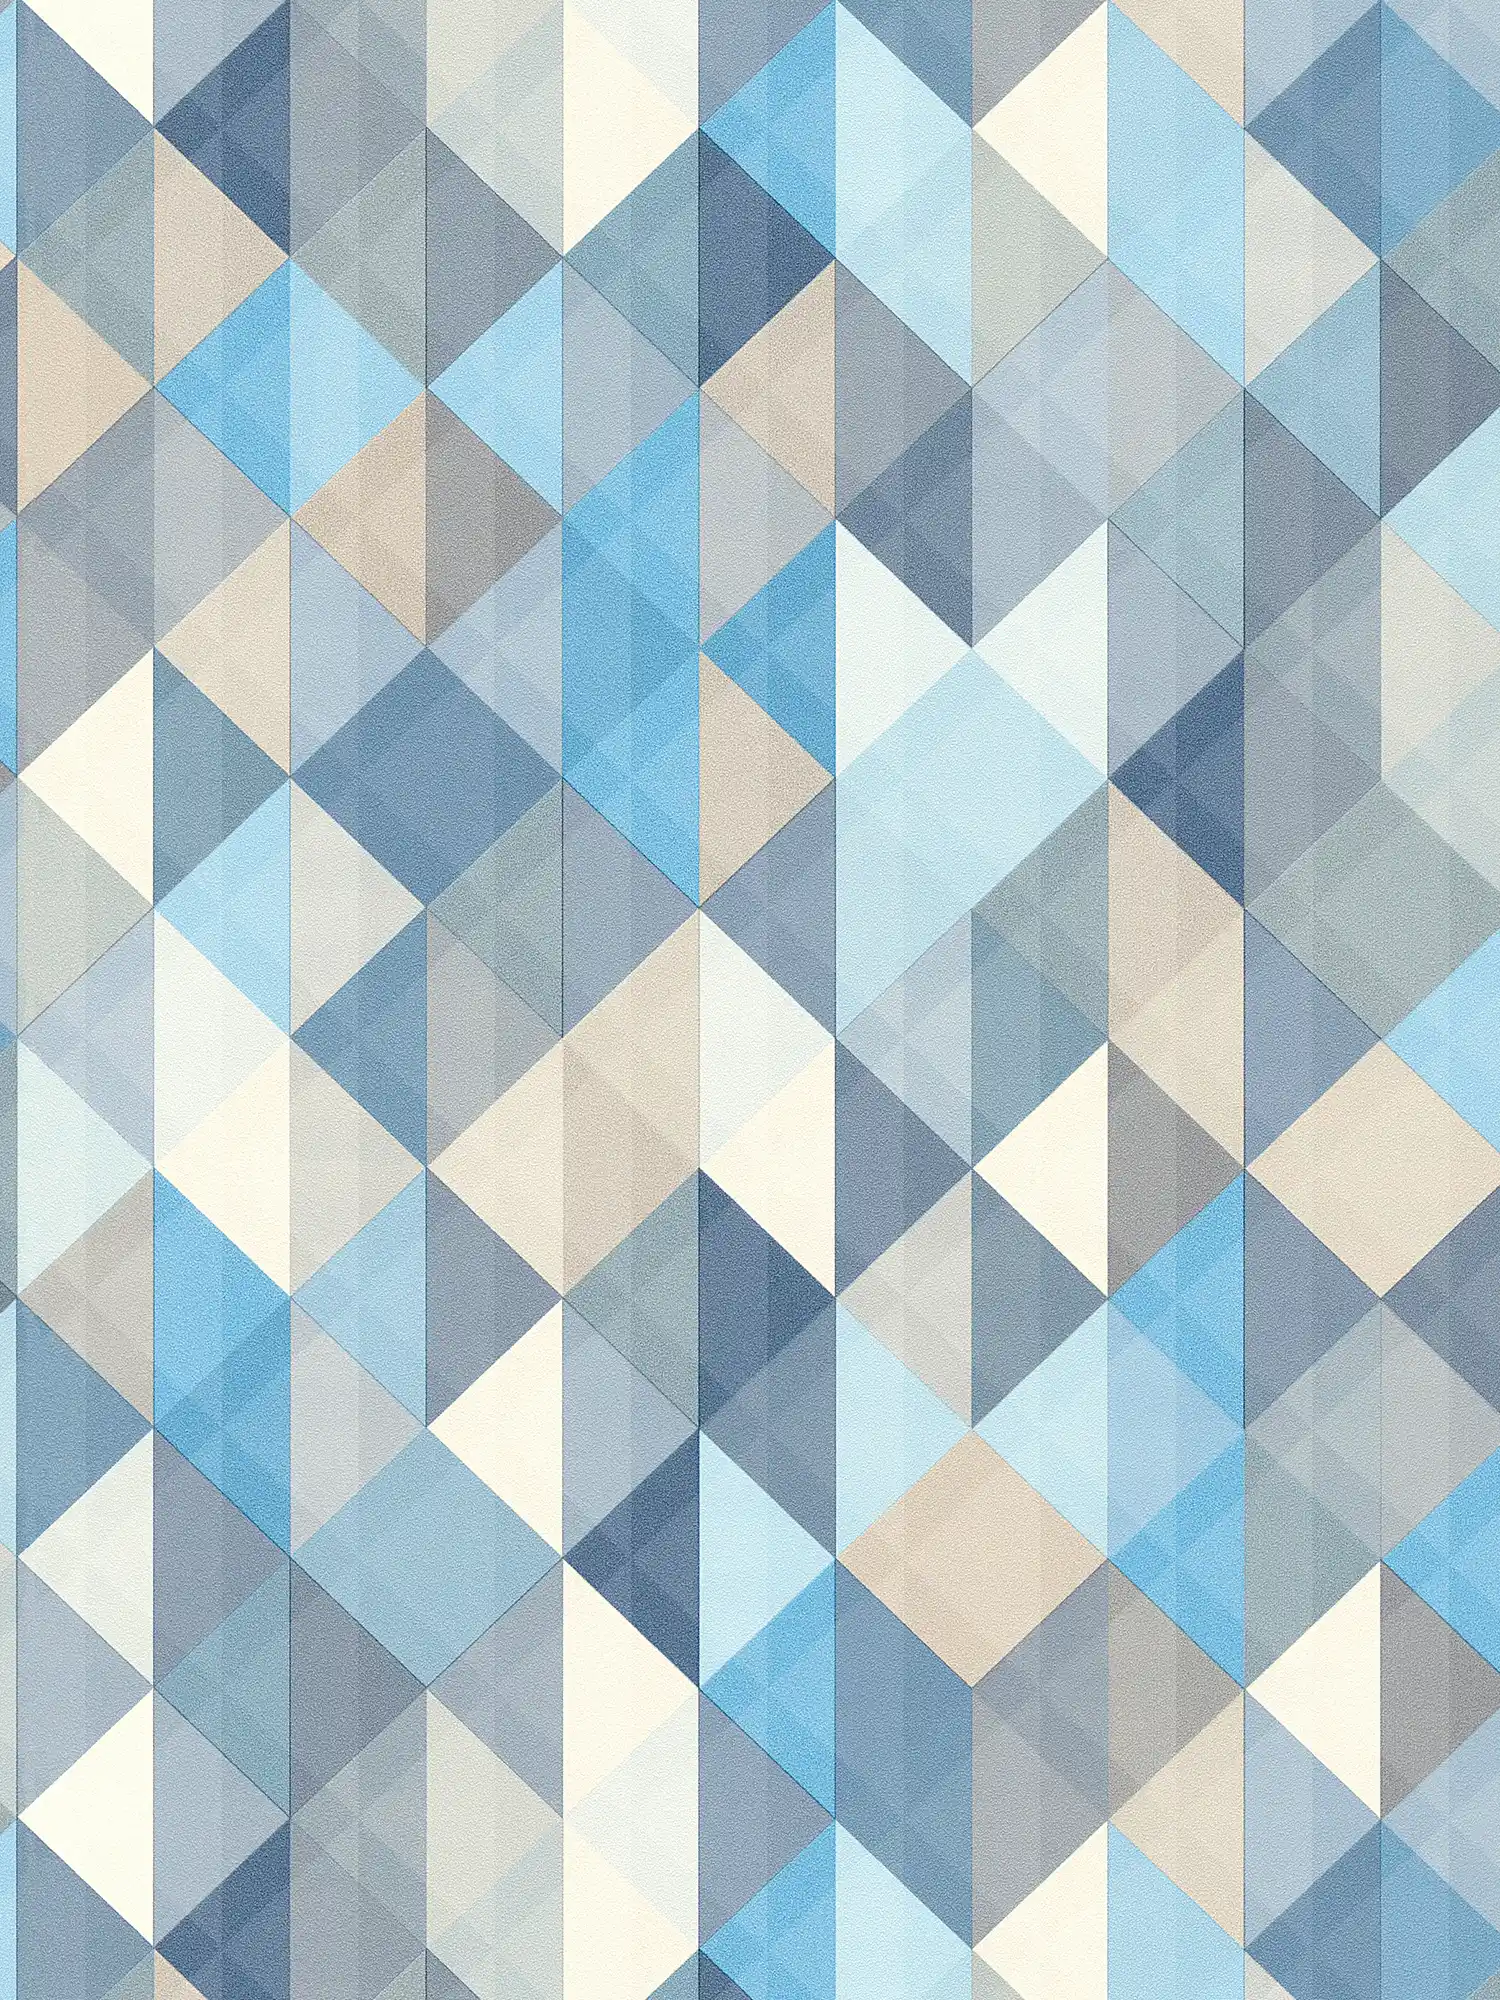 Behang in Scandinavische stijl met geometrisch patroon - blauw, grijs, beige
